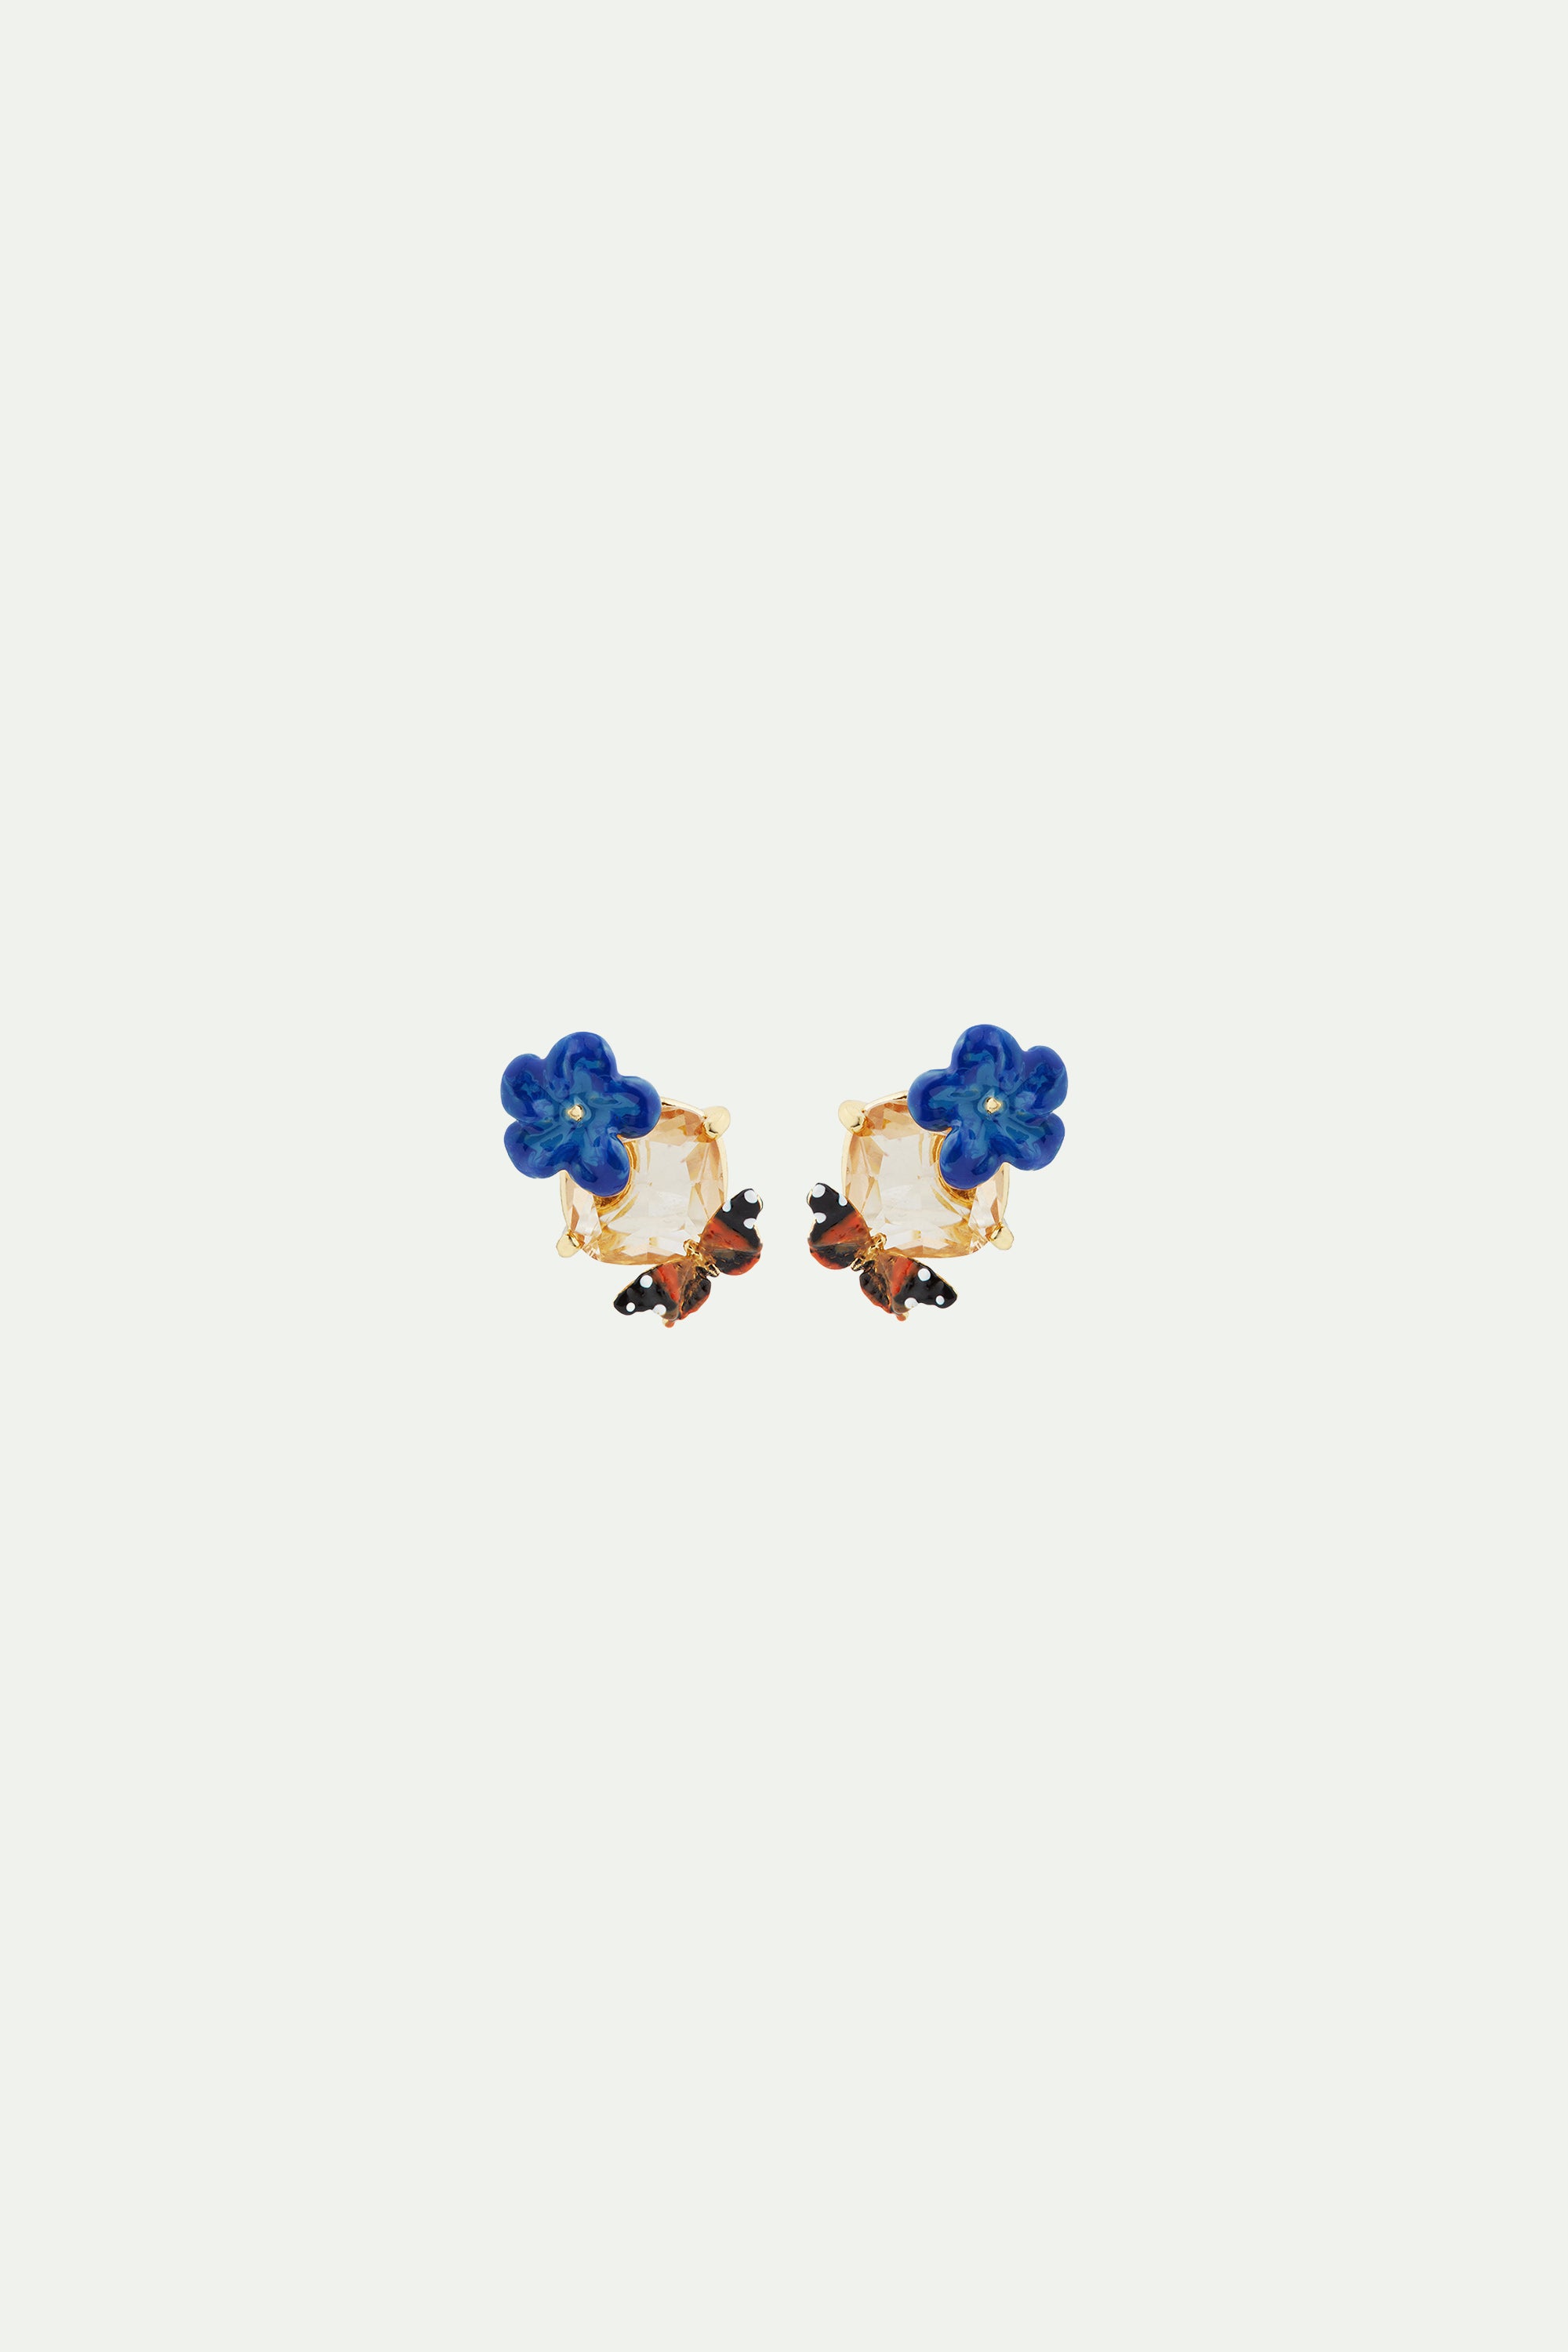 Pendientes bolitas flor de lino azul, cristal en facetas y mariposa